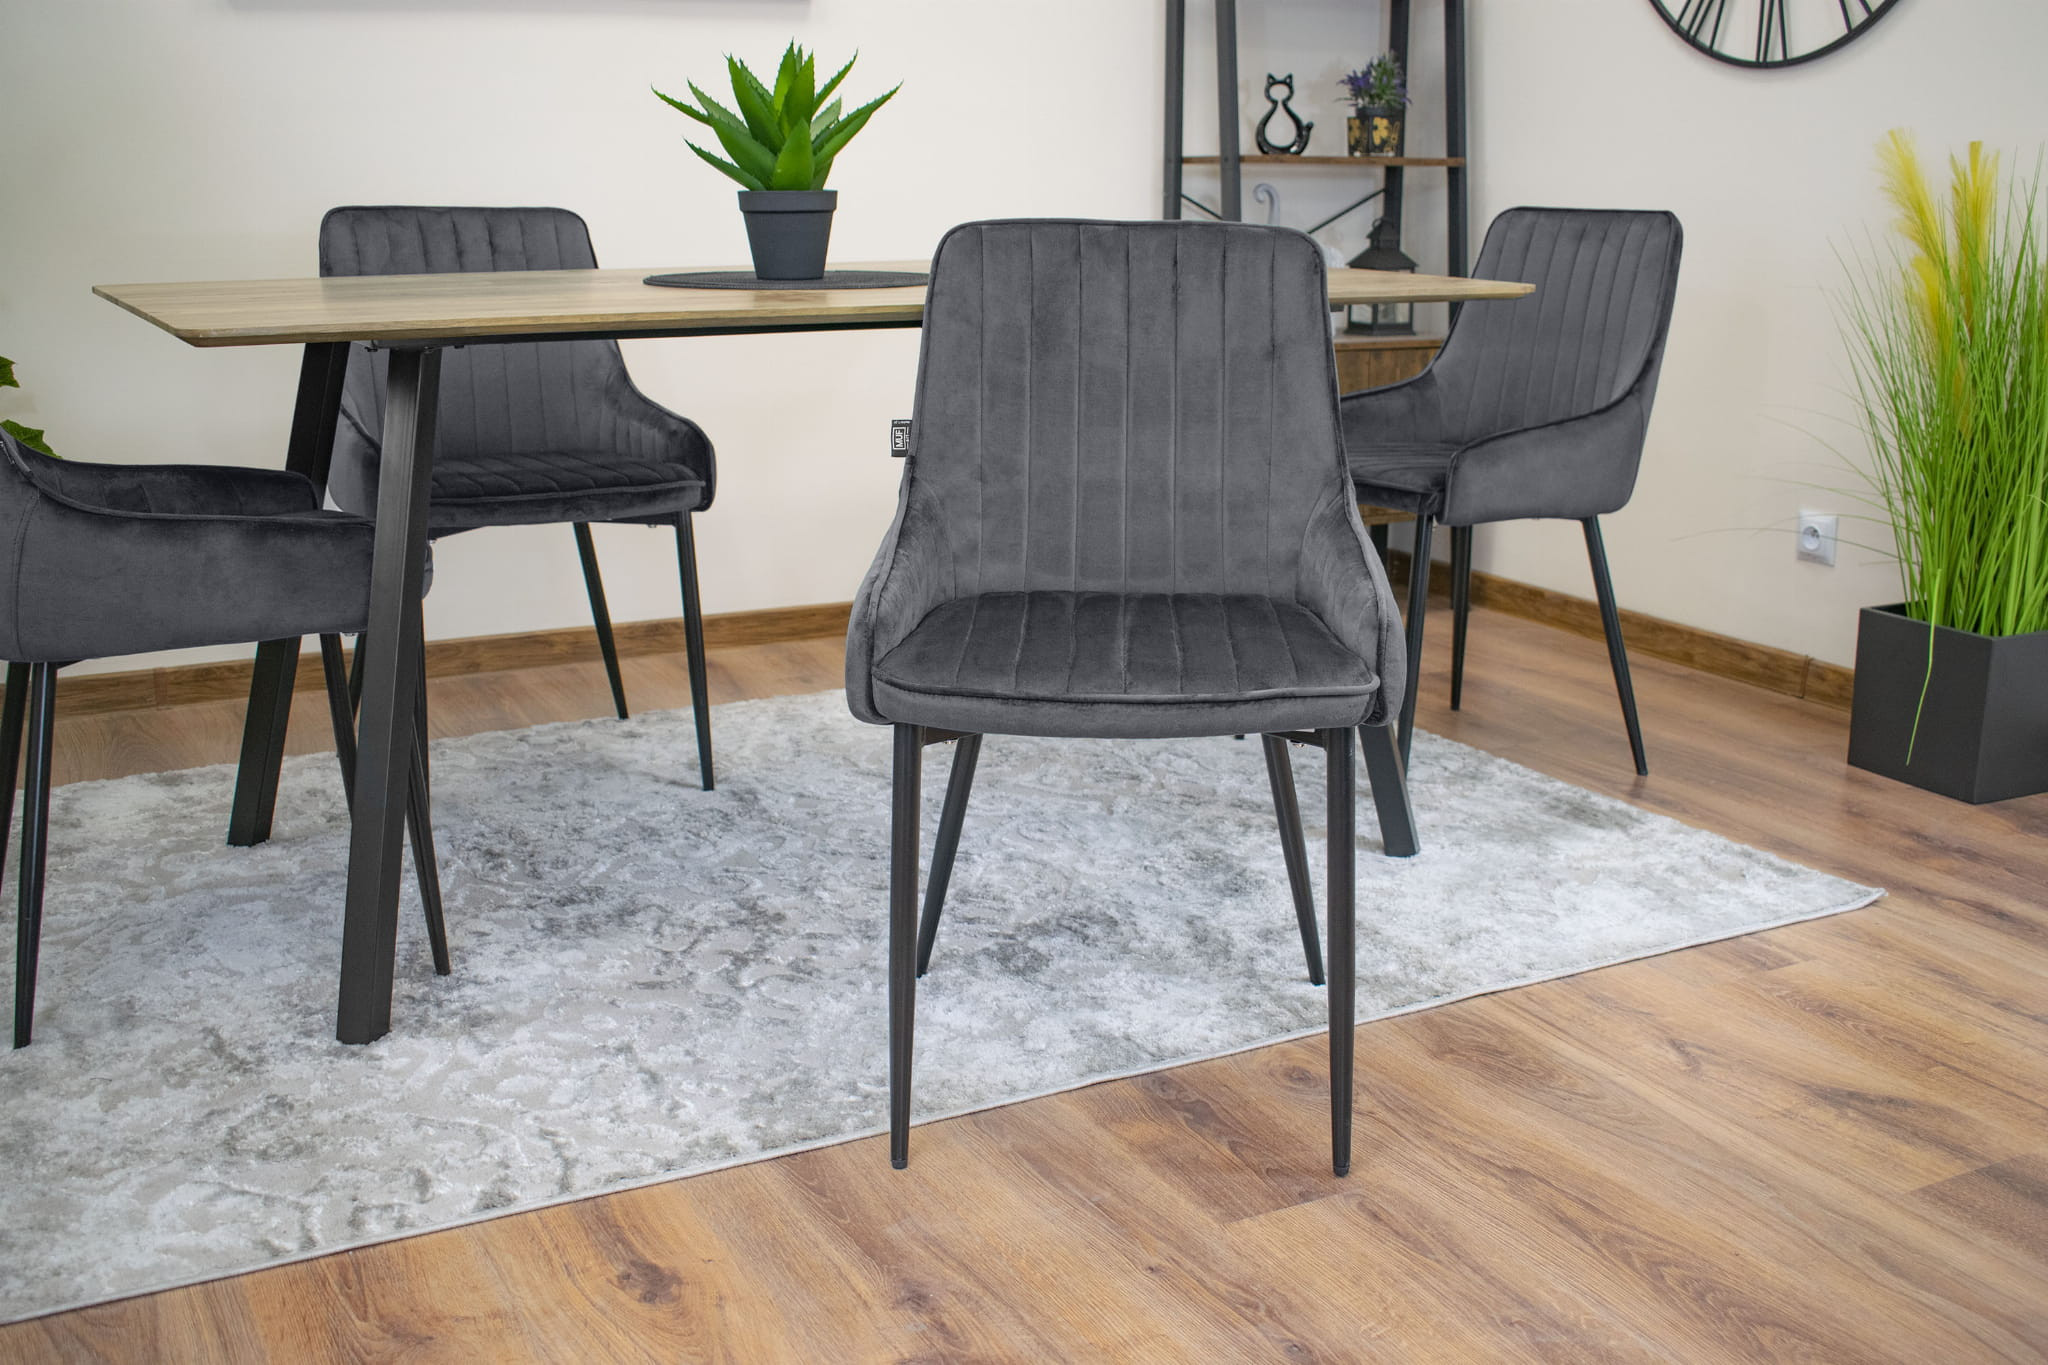 Set dvou jídelních židlí MONZA šedé (2ks)